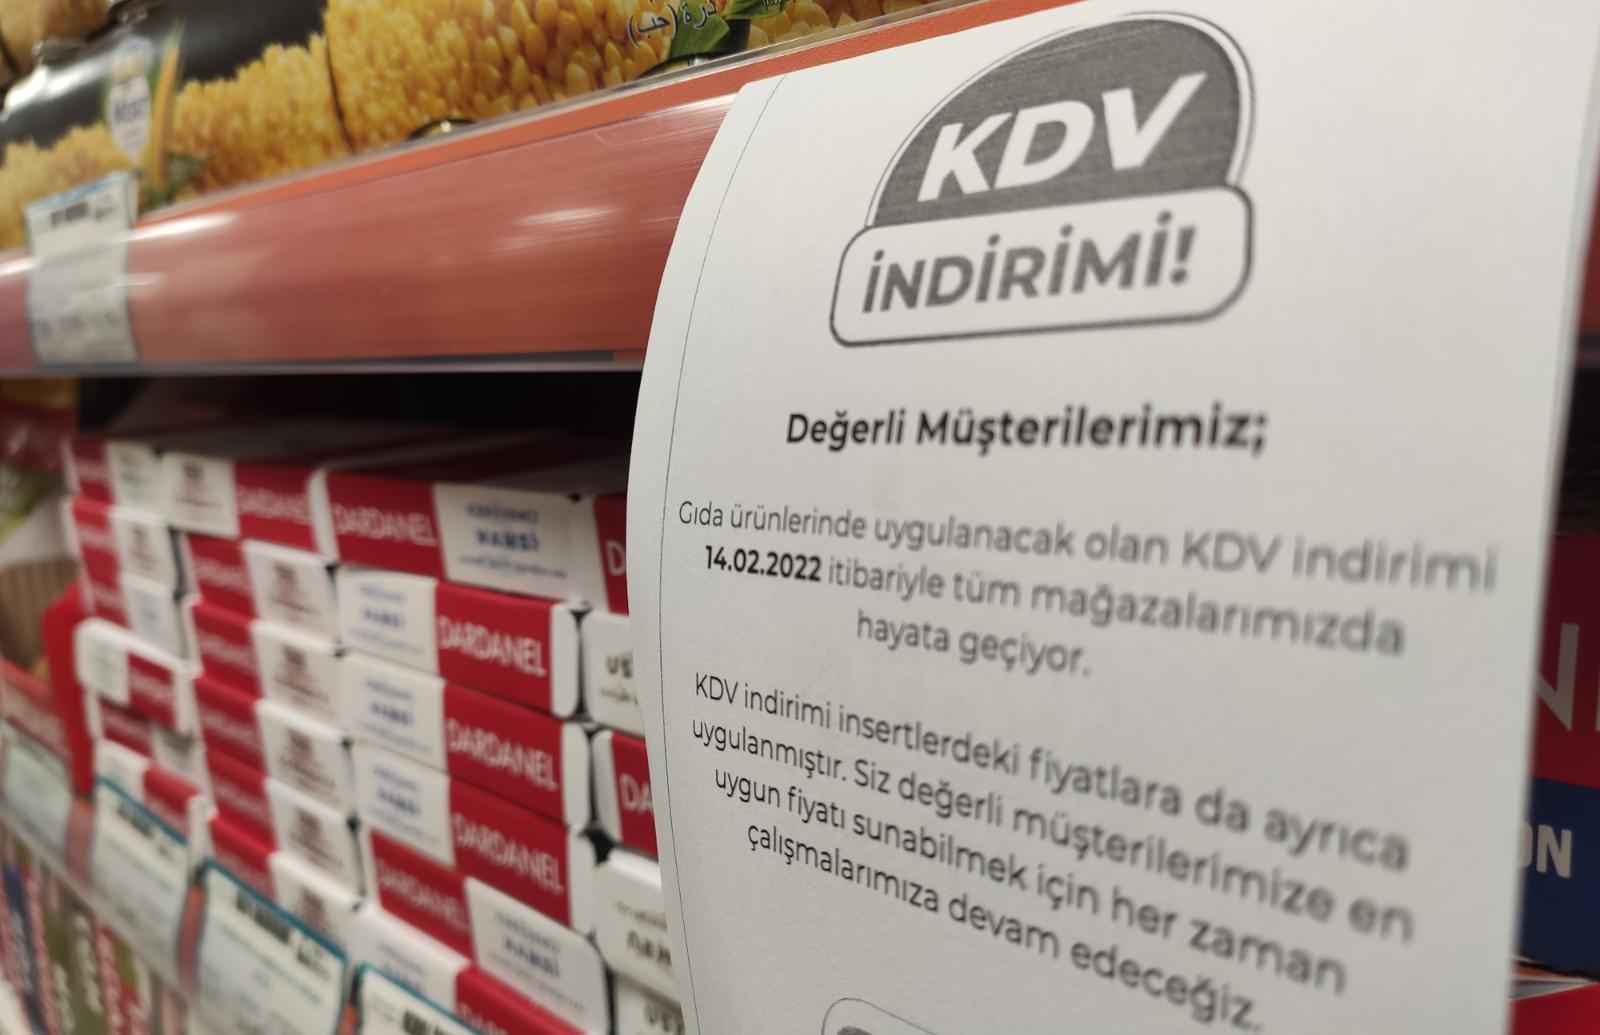 KDV indirimi market fiyatlarına yansıdı Dün 241 lira tutan market alışverişi bugün kaç TL